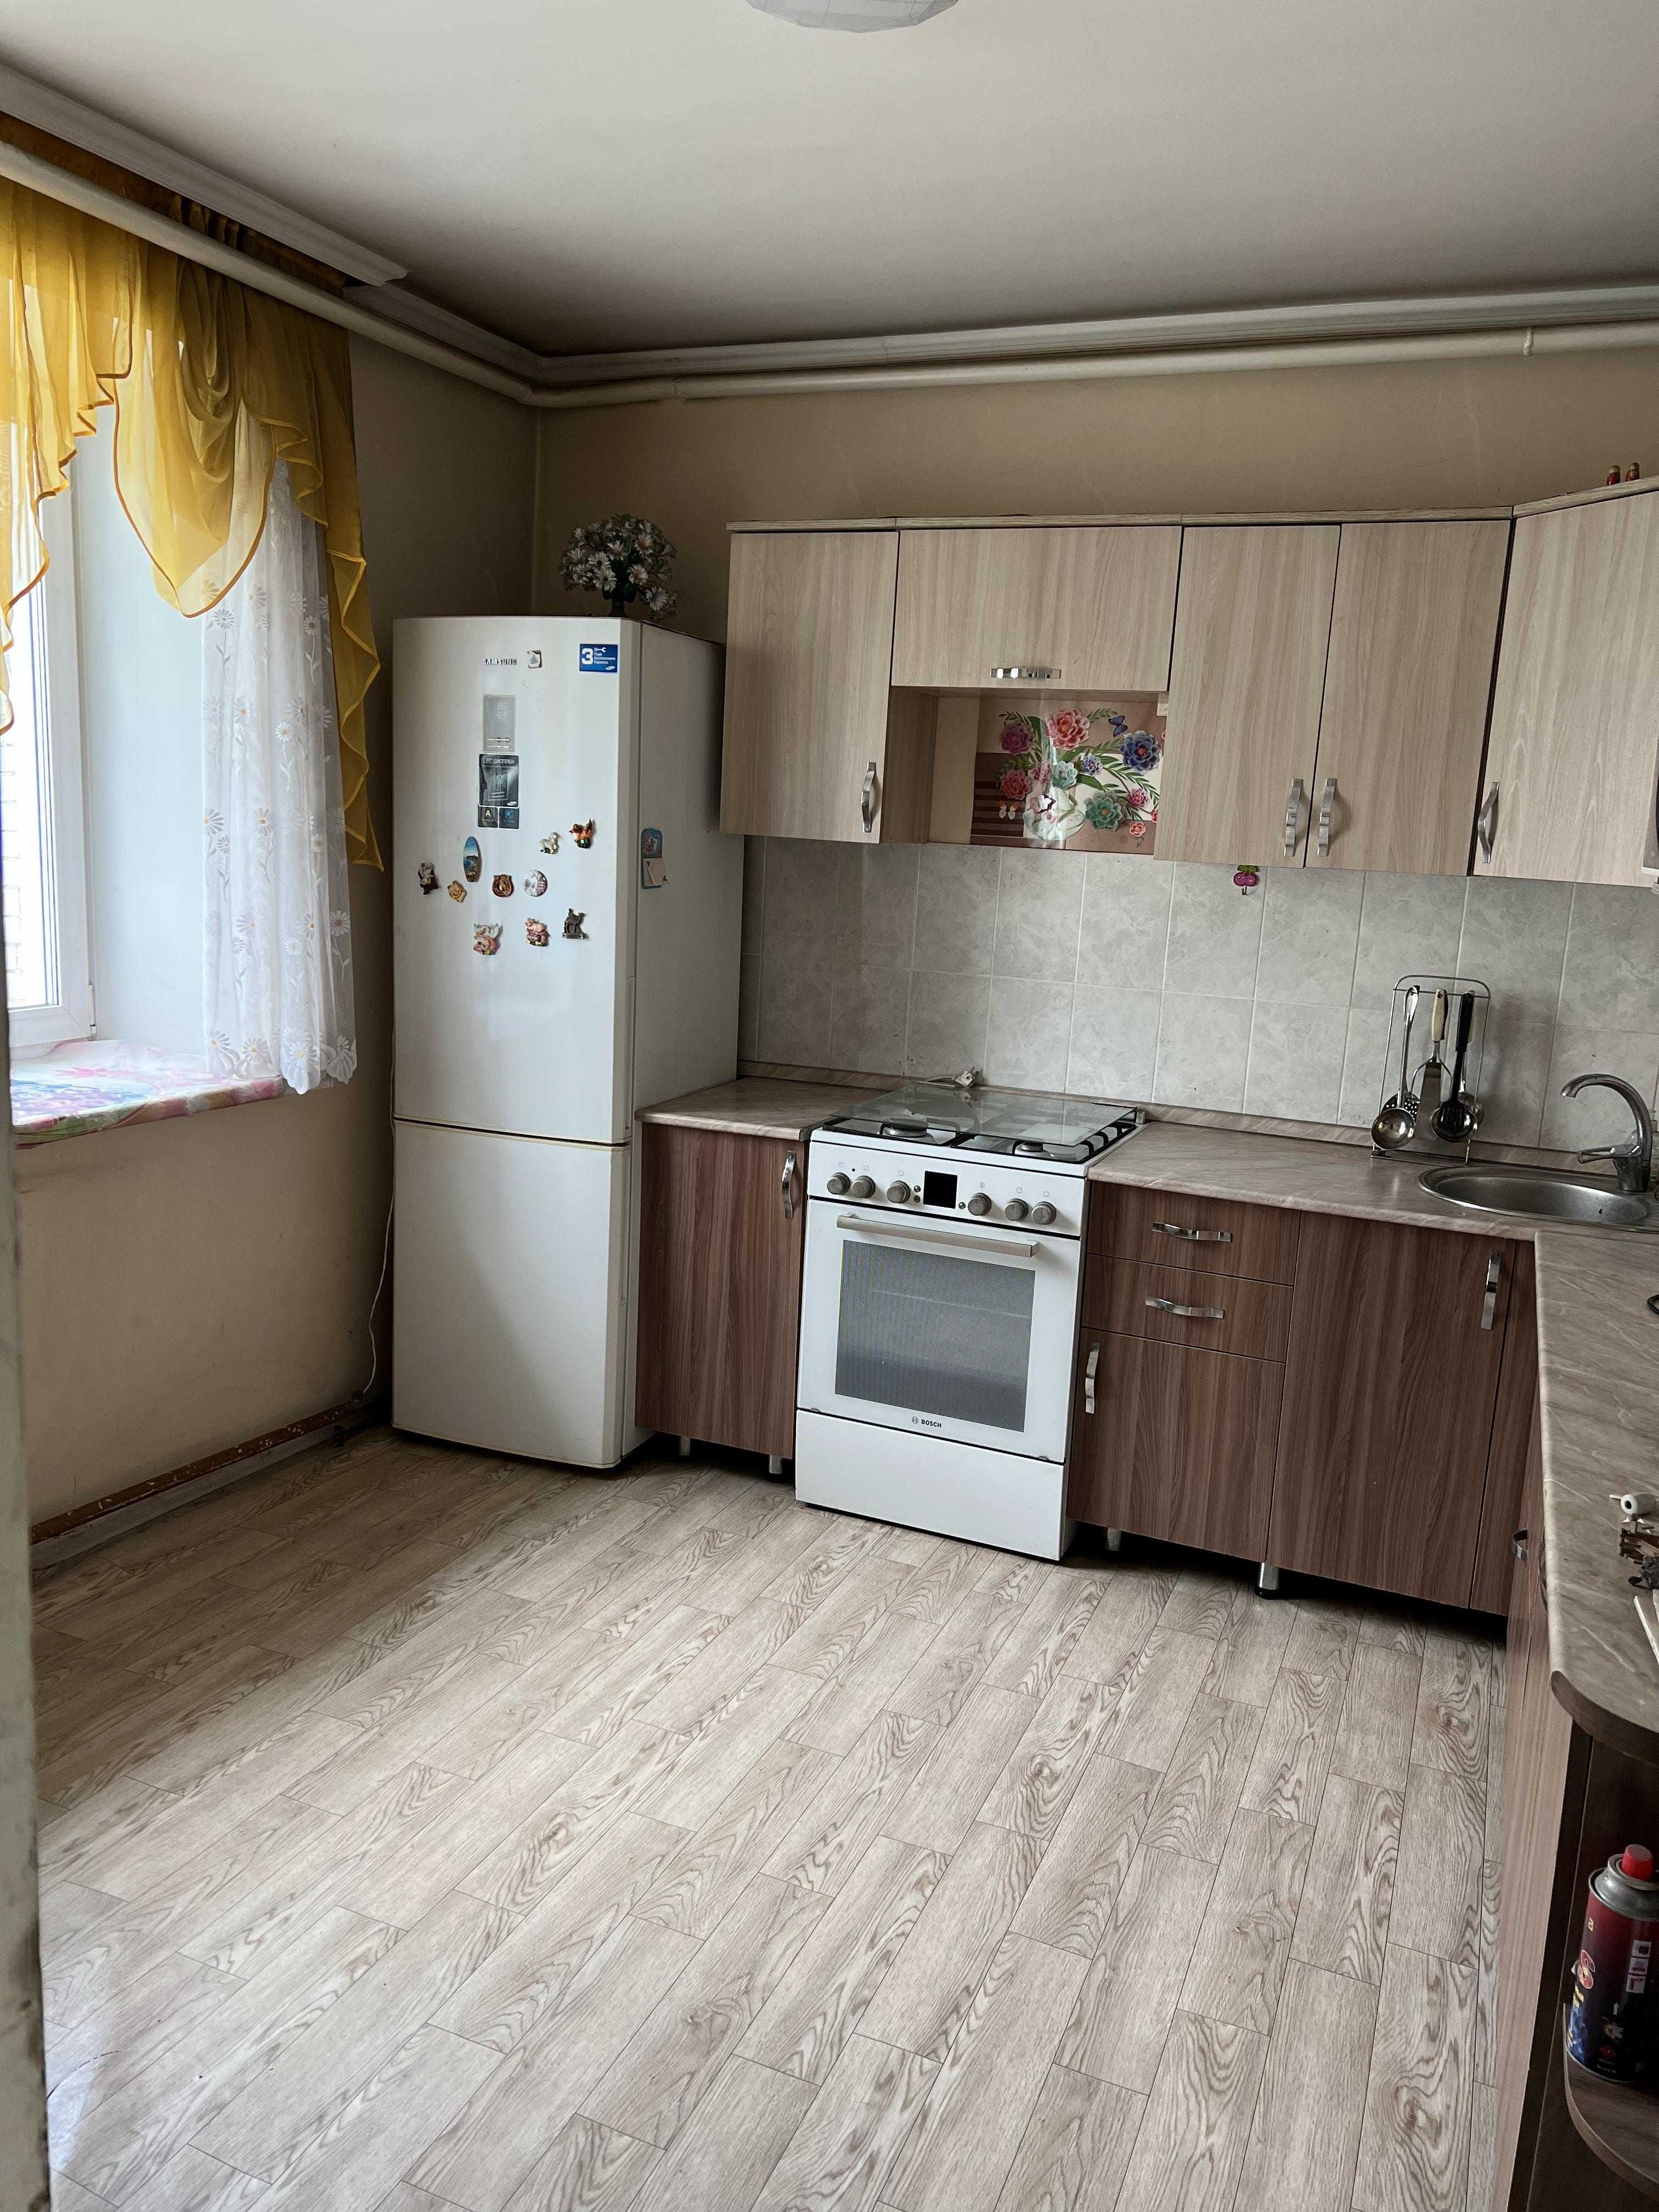 Продажа 4х комнатного дома в п.Шульбинск